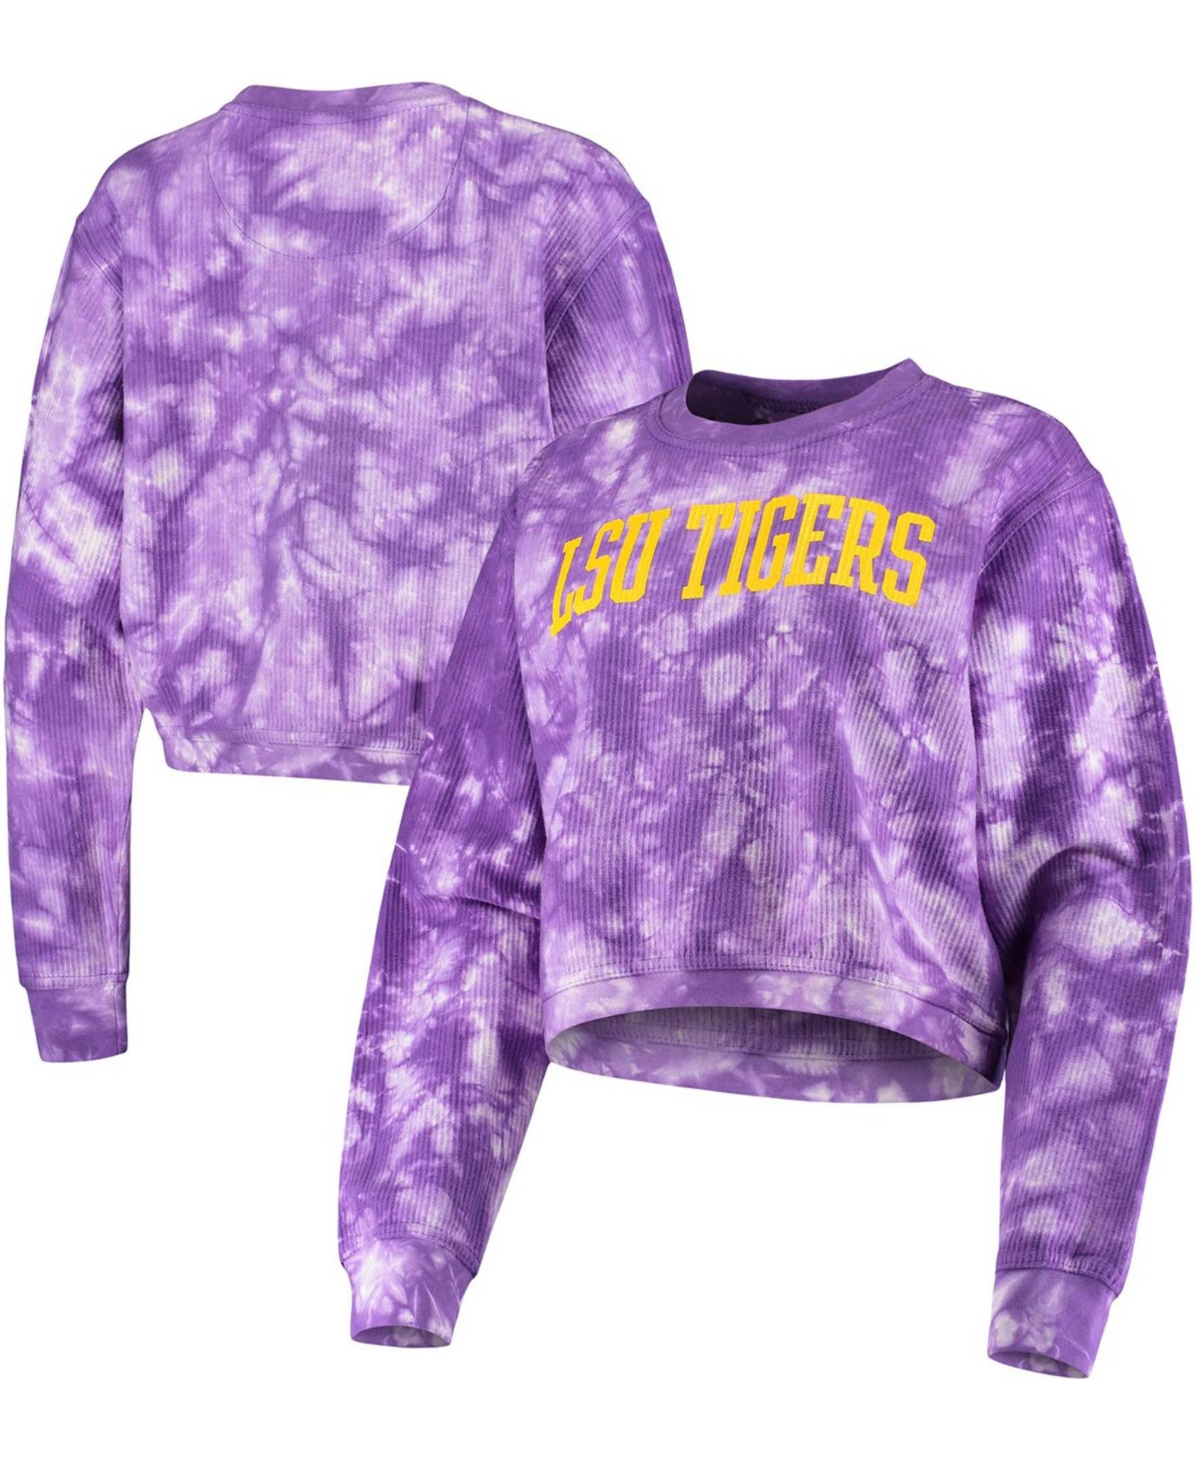 Pressbox Women's Purple Lsu Tigers Campus Tie-Dye Comfy Cord Pullover Sweatshirt